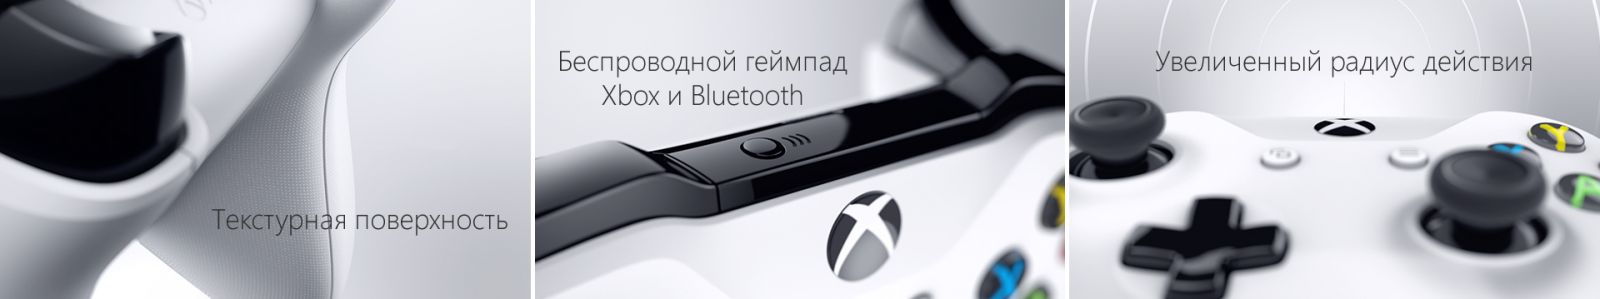 Xbox One S 1TB с двумя джойстиками image7